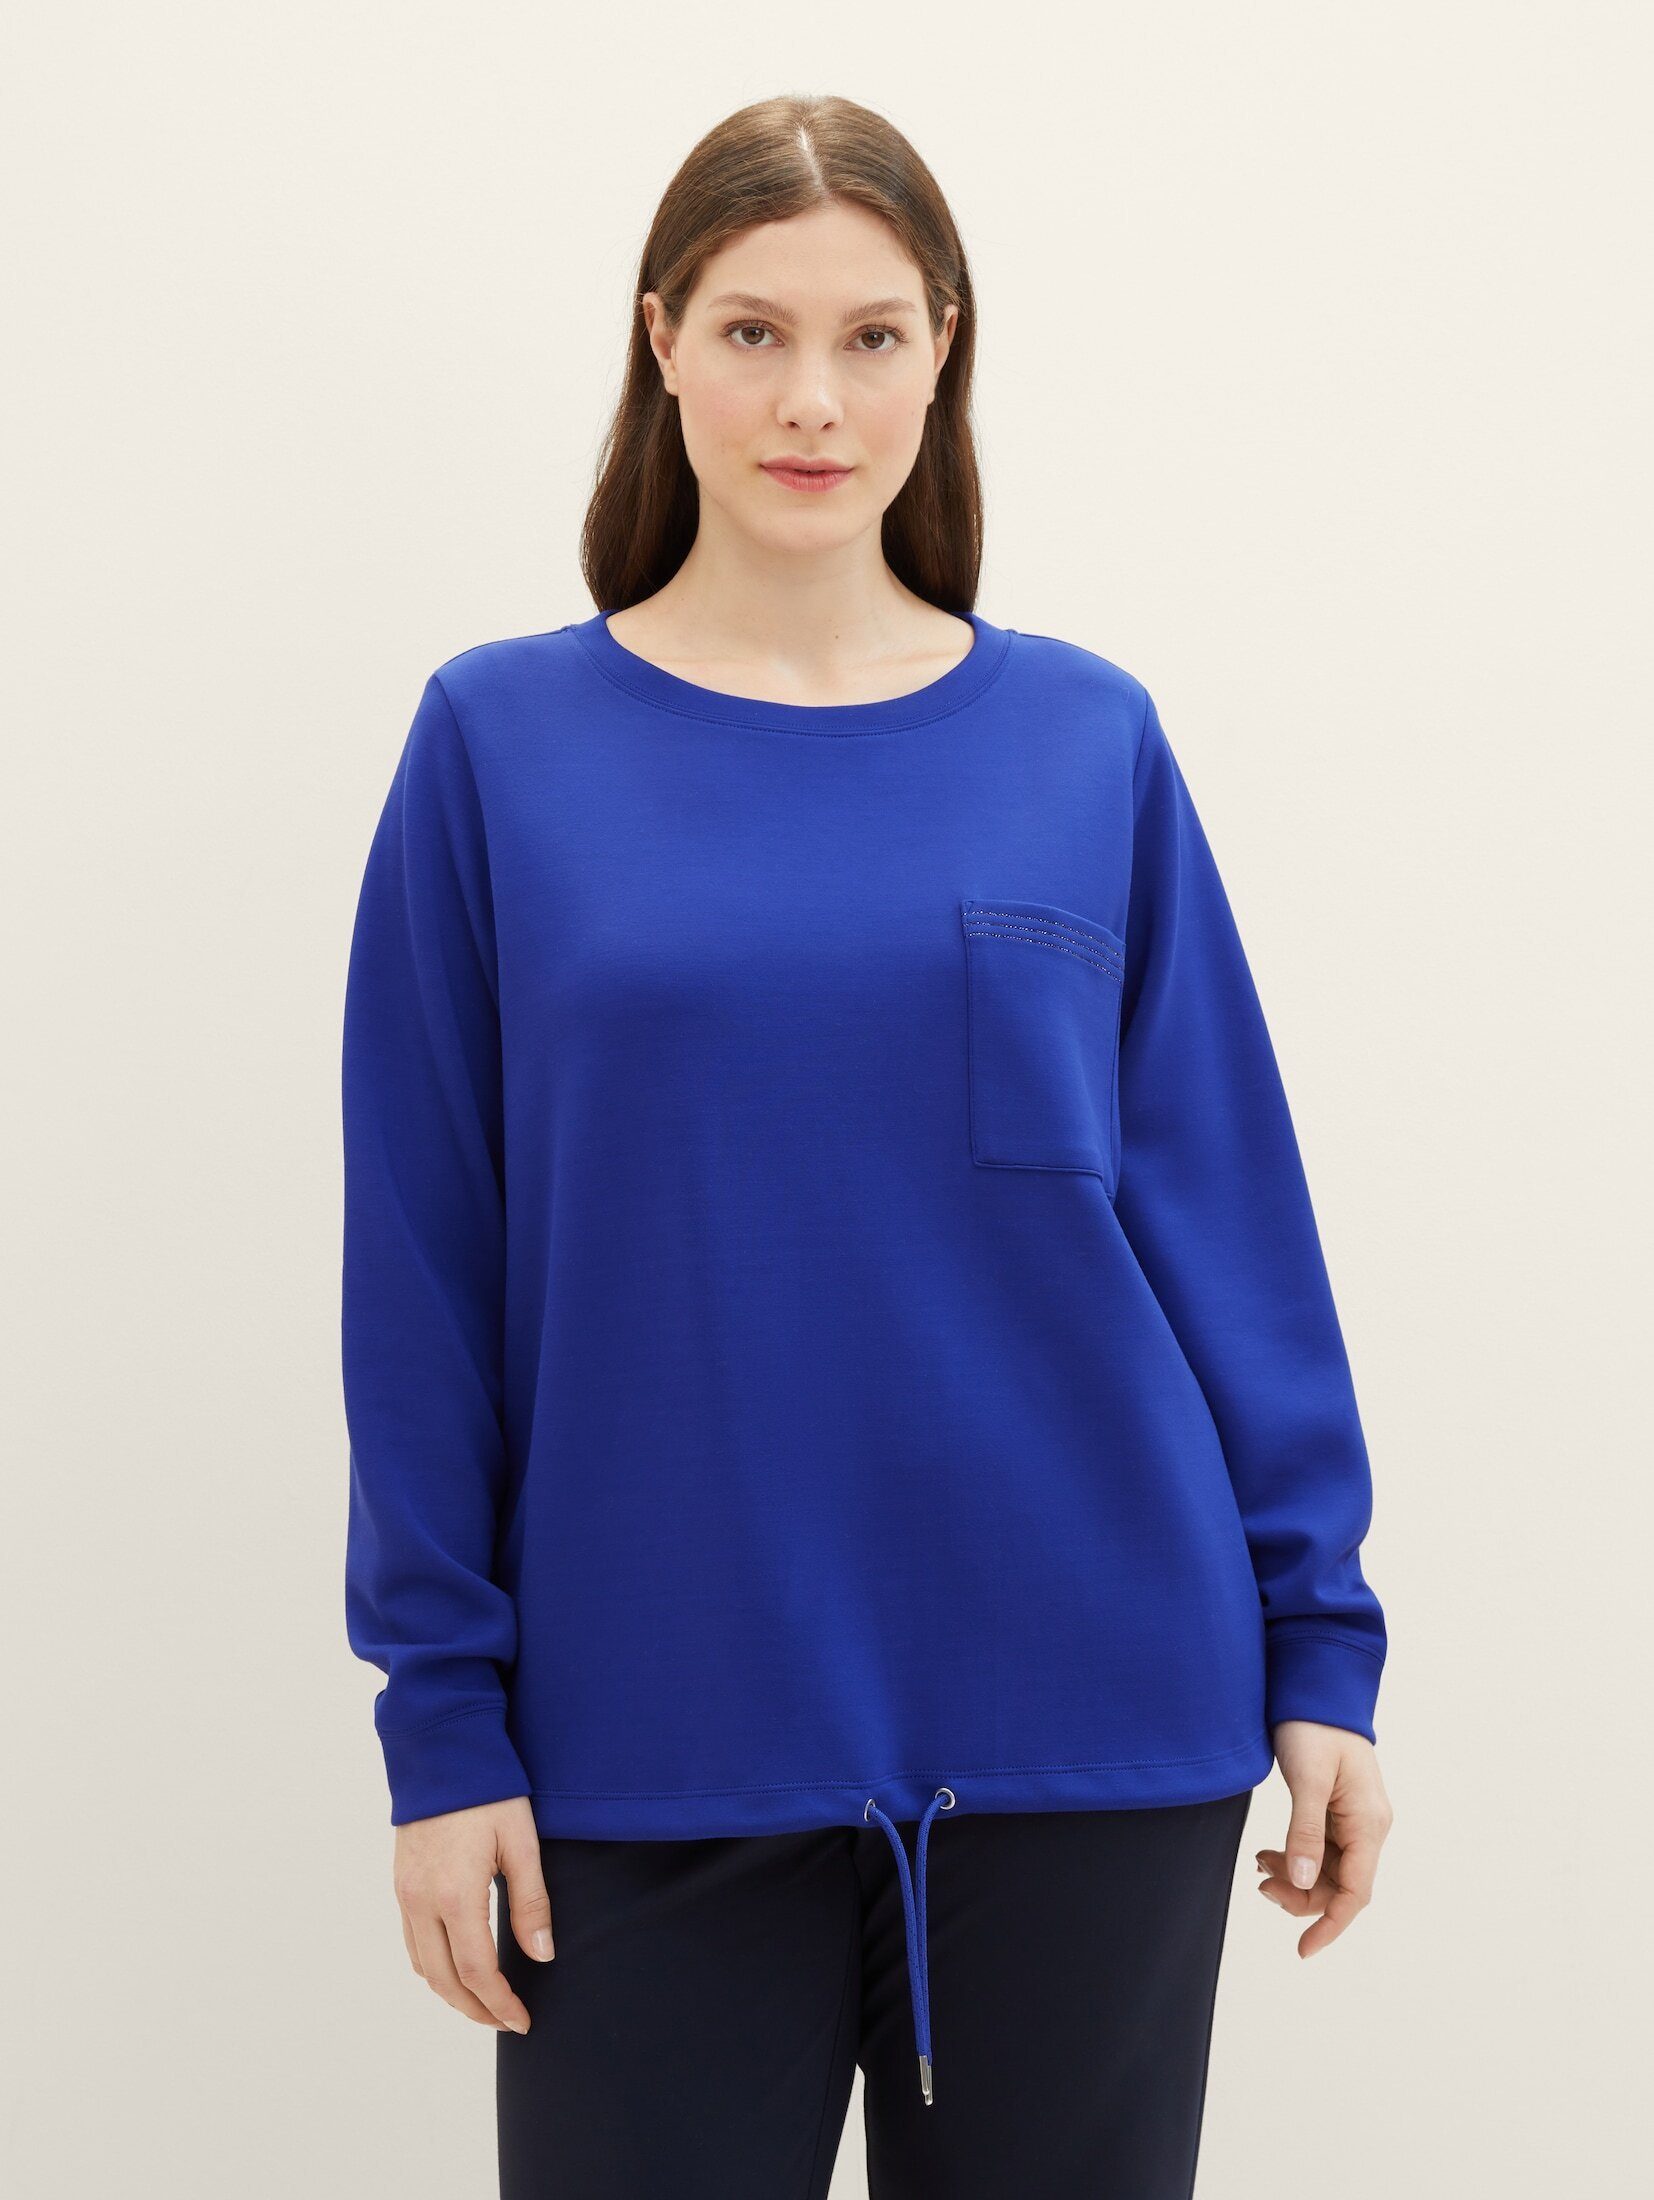 TOM TAILOR PLUS Sweatshirt Plus - Sweatshirt mit Brusttasche crest blue